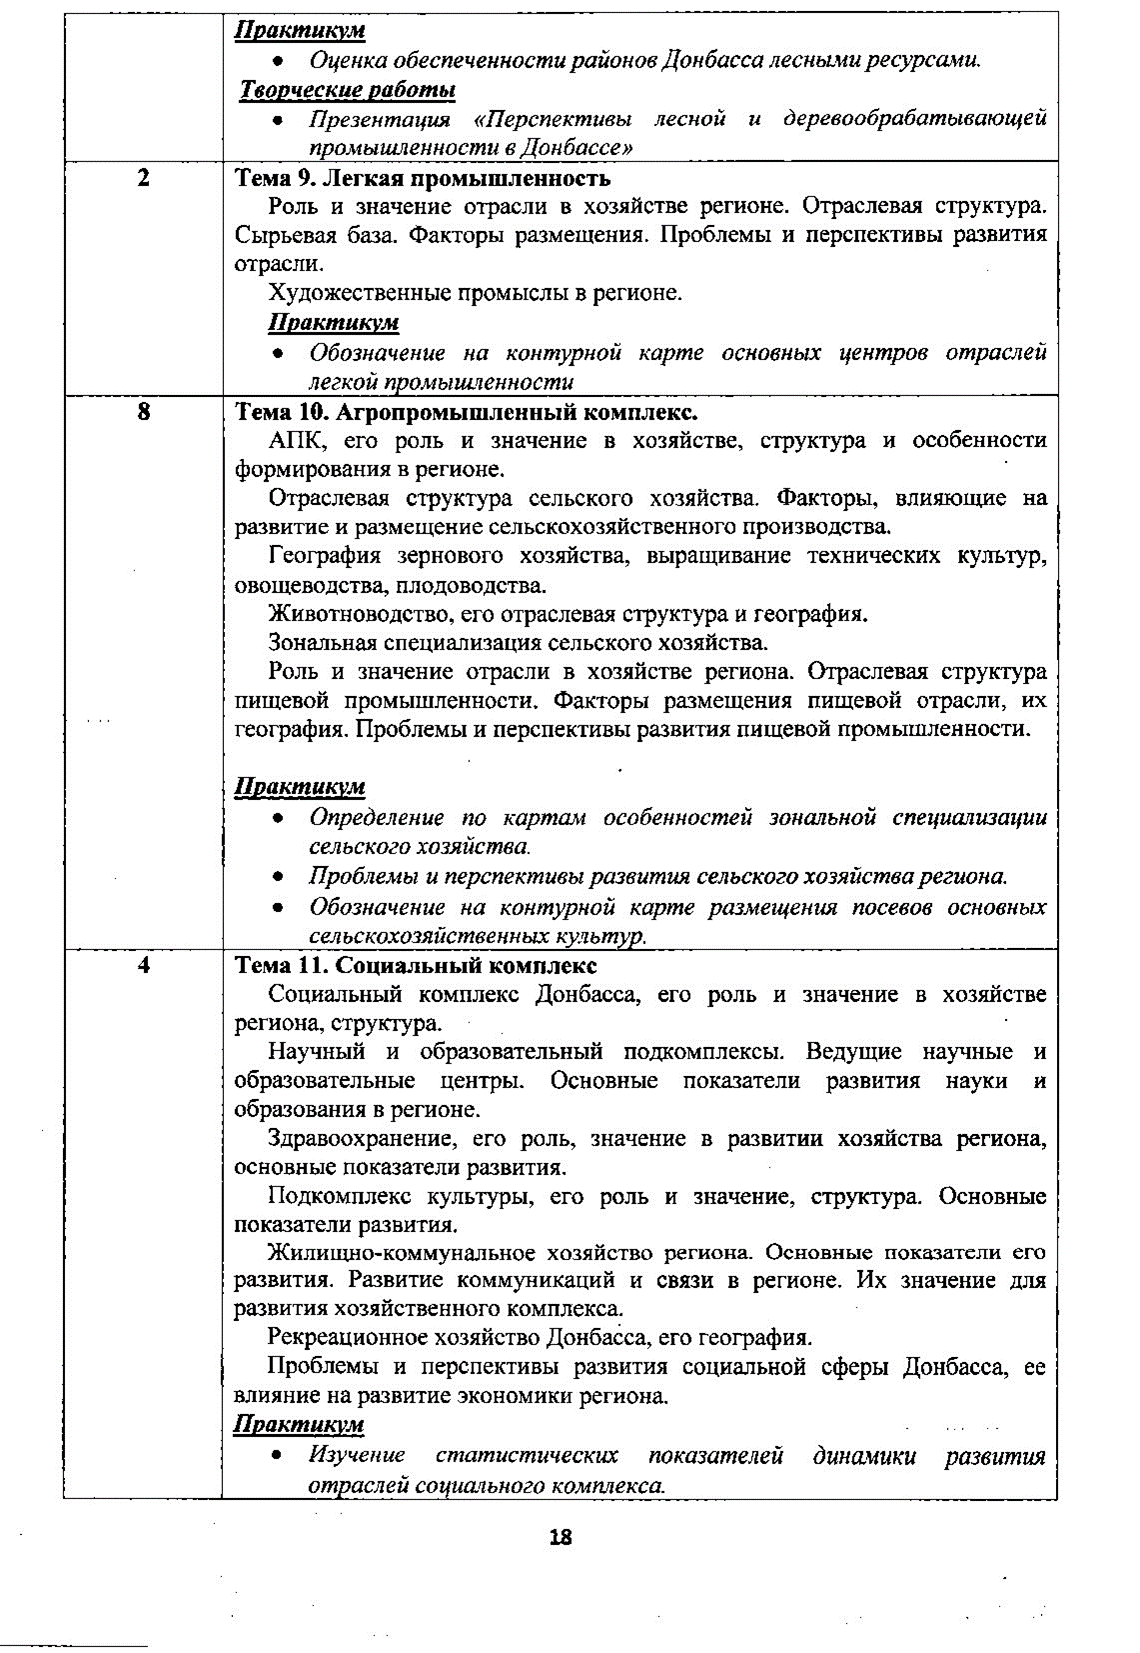 Рабочая программа по учебному предмету «Геограия», 5-9 классы с русским языком обучения (Базовый уровень) на 2016-2020 учебные годы